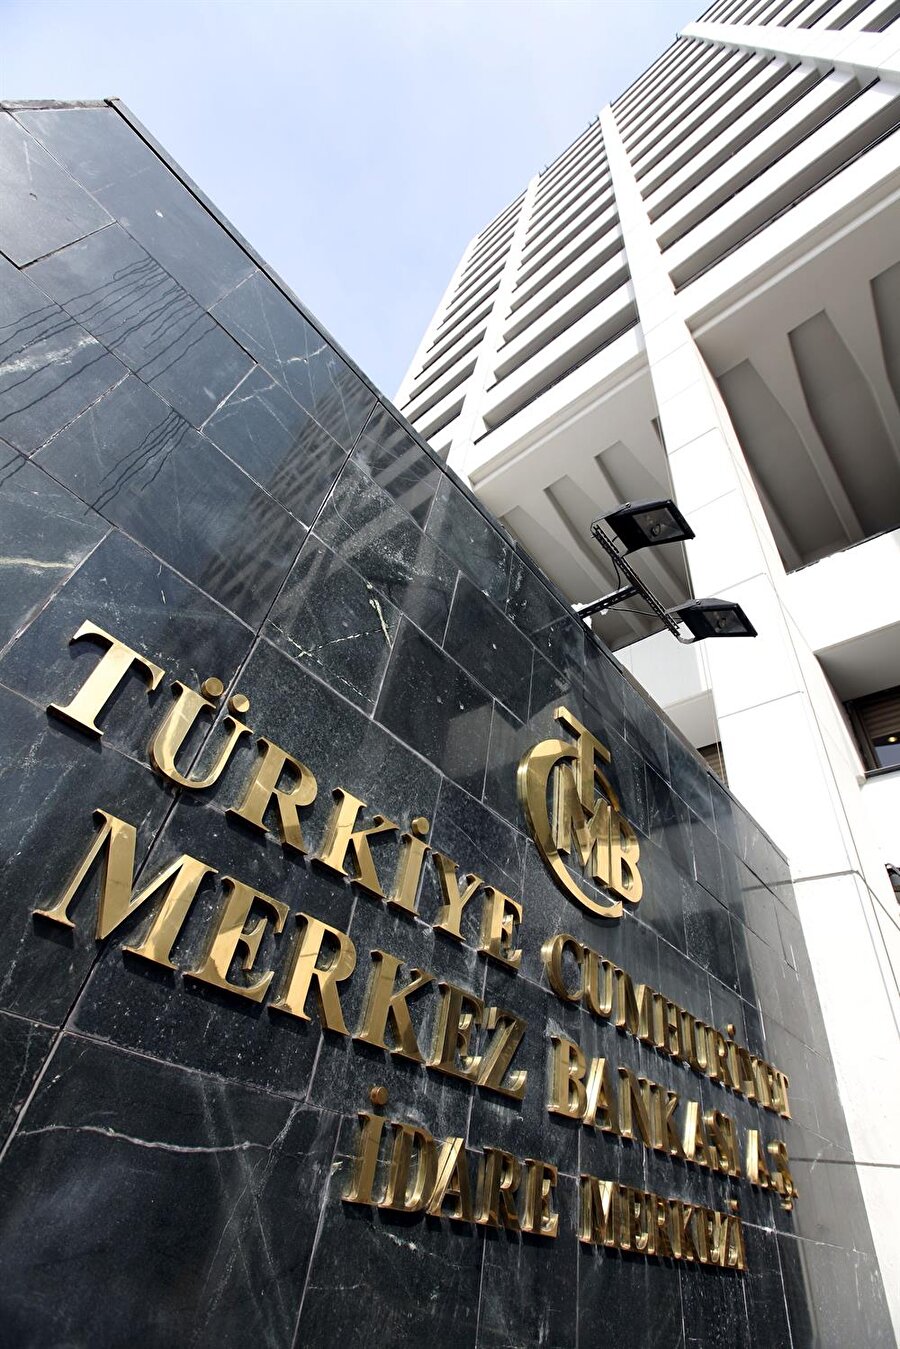 Türkiye’nin uluslararası yatırım pozisyonu belli olacak

                                    
                                    
                                    Türkiye Cumhuriyet Merkez Bankası, ağustos ayı uluslararası yatırım pozisyonunu açıklayacak. Uluslararası Yatırım Pozisyonu (UYP) verilerine göre, 2017 Temmuz sonu itibarıyla, Türkiye’nin yurtdışı varlıkları, 2016 yıl sonuna göre yüzde 2,6 oranında artışla 221 milyar dolar, yükümlülükleri ise yüzde 16,1 oranında artışla 670,9 milyar dolar olarak gerçekleşti.
                                
                                
                                